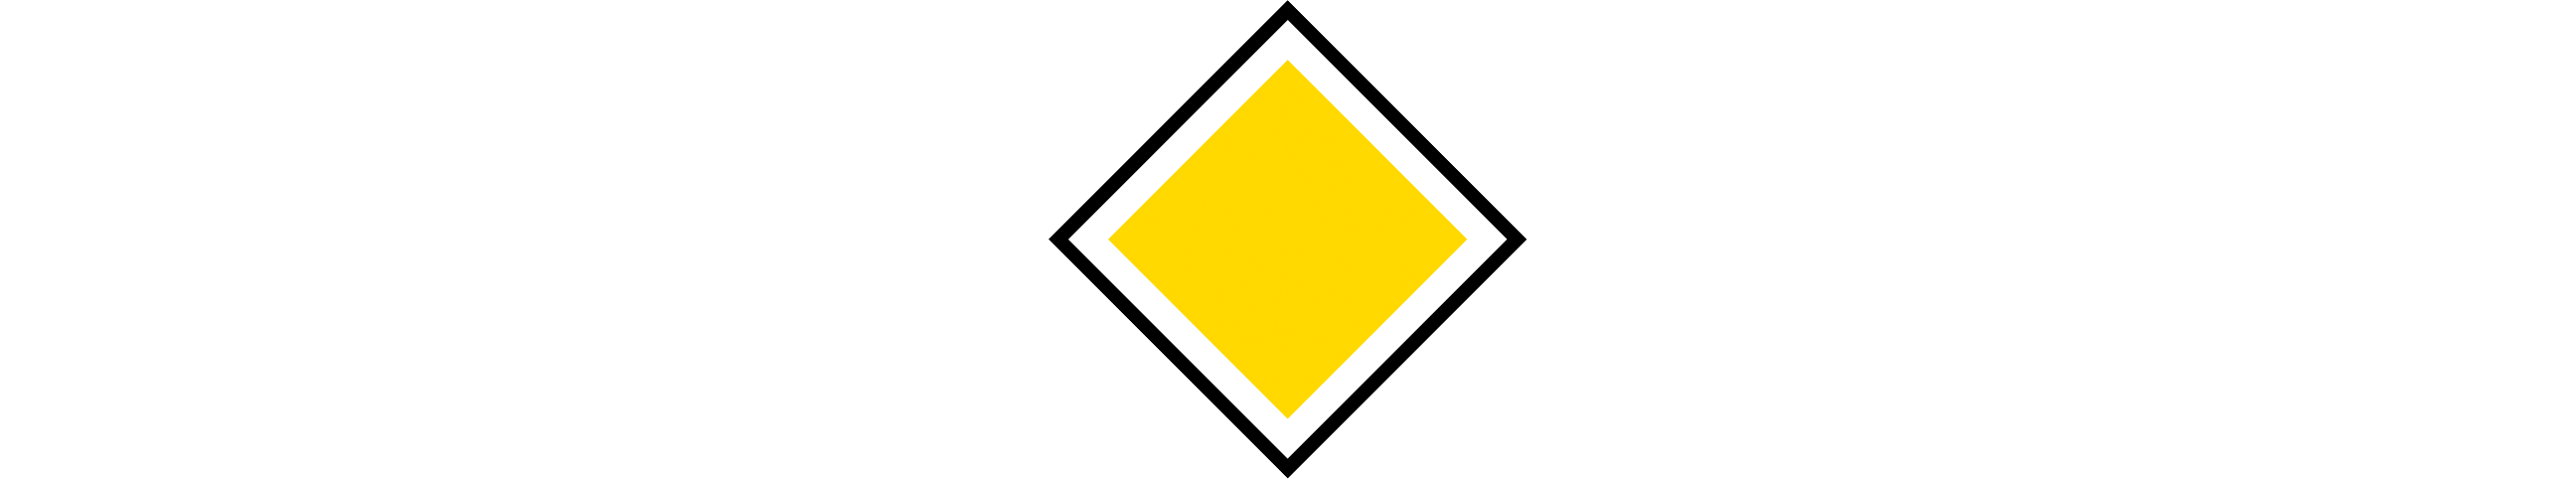 Gul kvadratisk skylt som markerar huvudled.